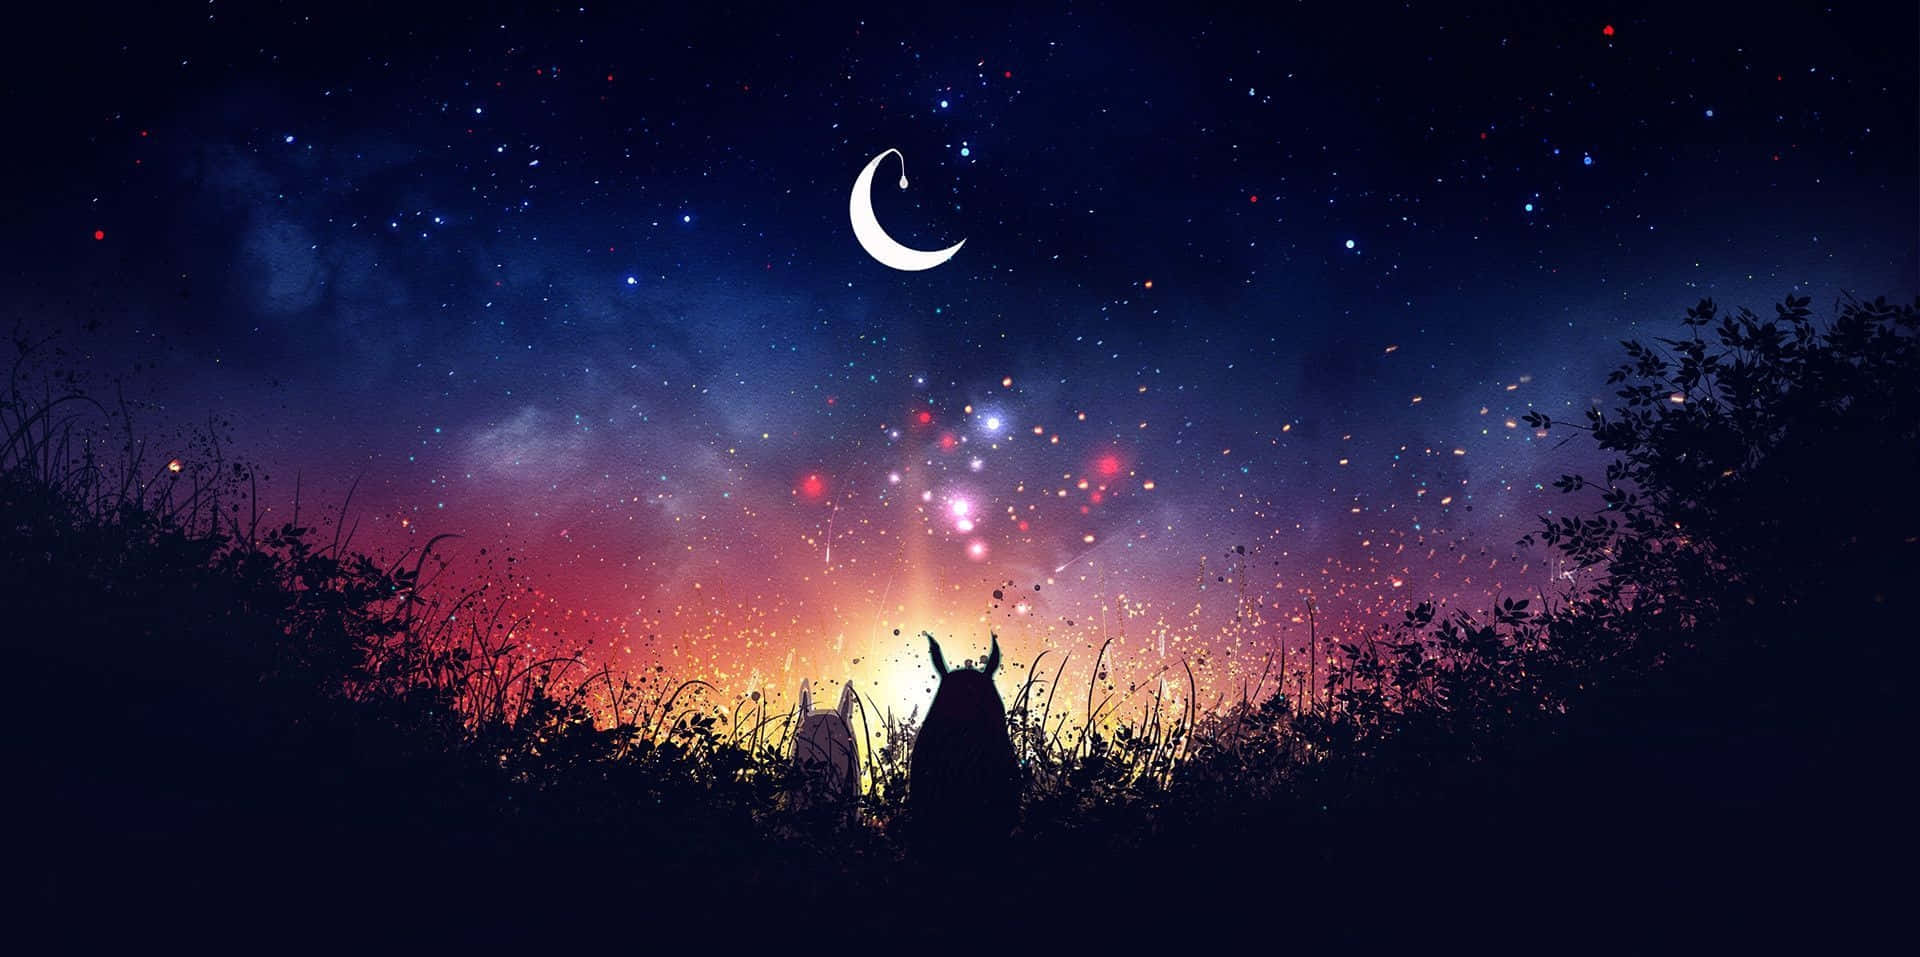 Cielonocturno Mágico Con Luna Creciente Y Estrellas Brillantes. Fondo de pantalla